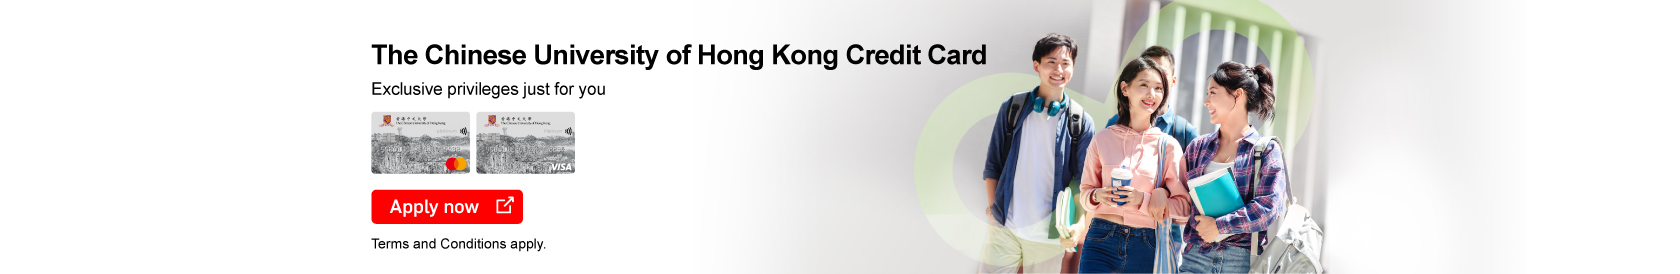 The Chinese University of Hong Kong Credit Card